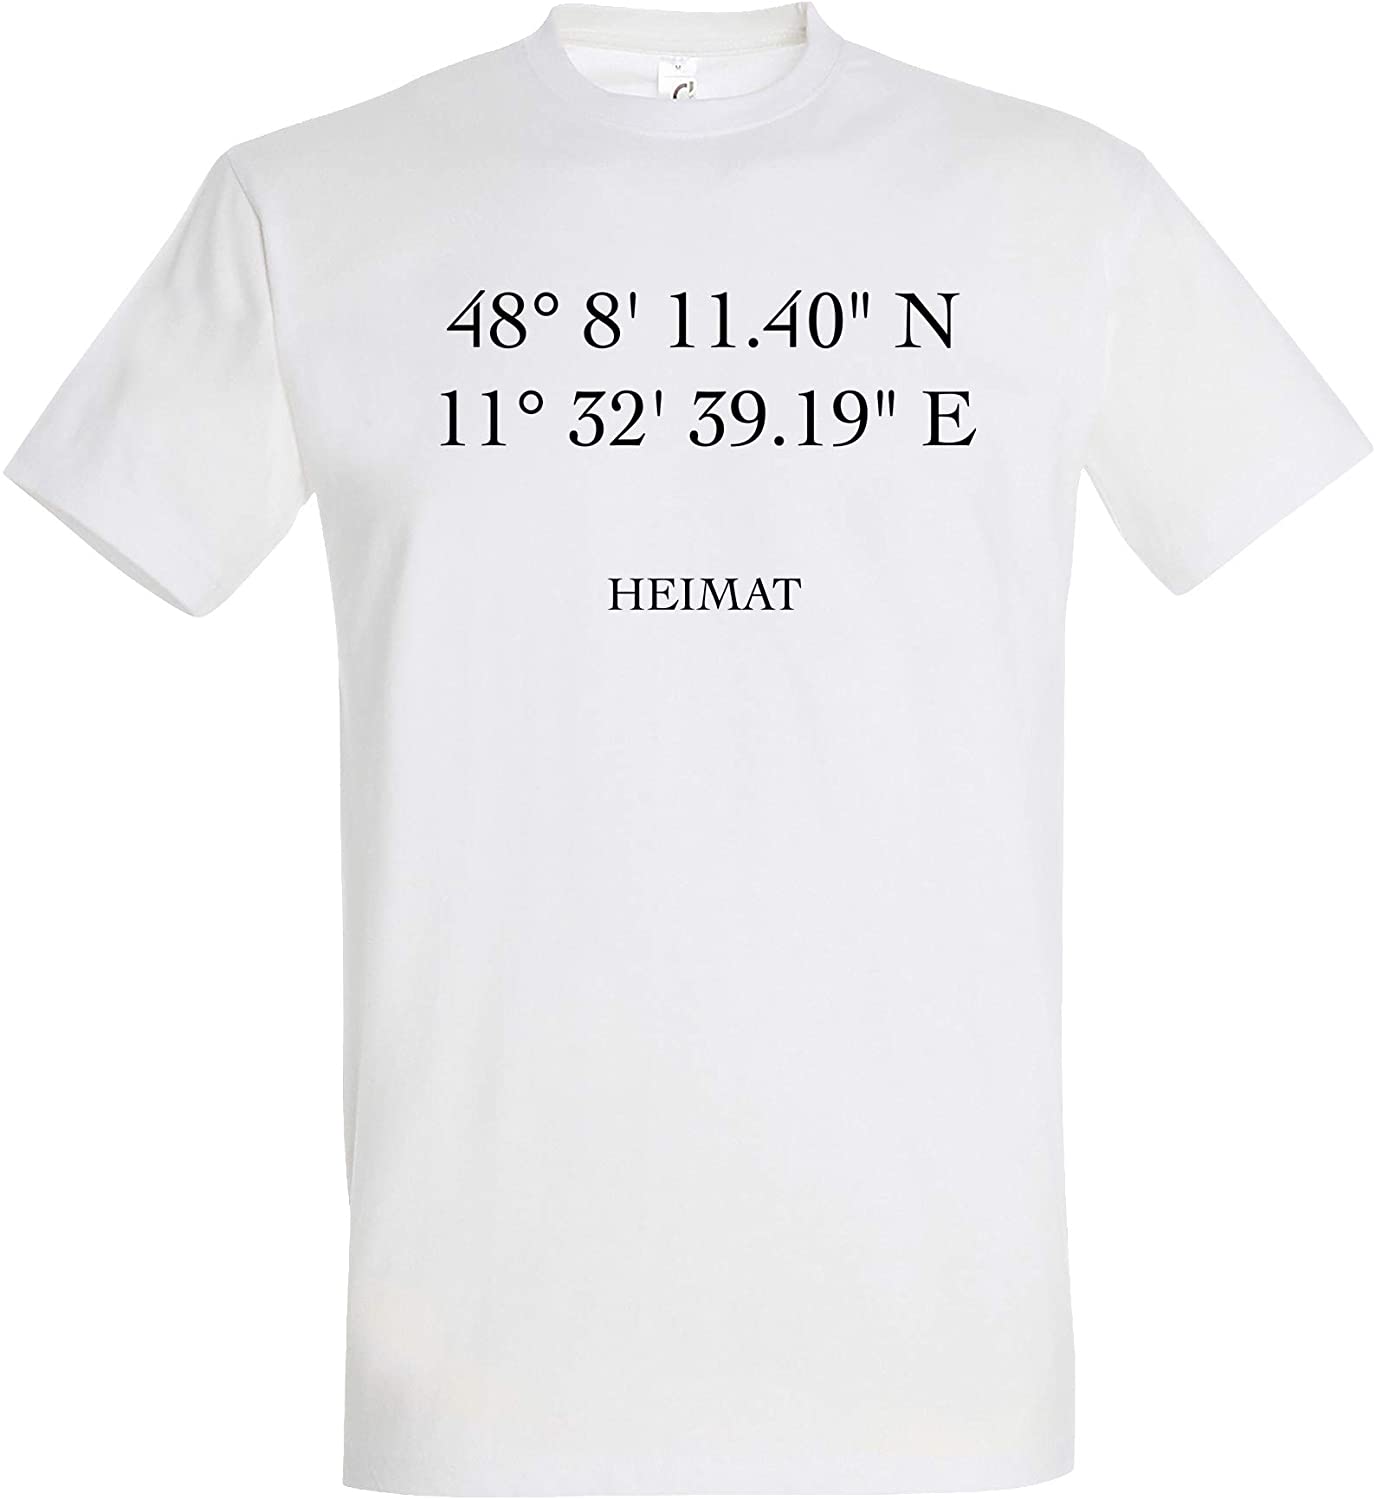 Weisses Personalisiertes T-Shirt mit individuellen Koordinaten und Text, GPS-Koordinaten, individualsierbares T-Shirt, Shirt mit eigenen Koordinaten